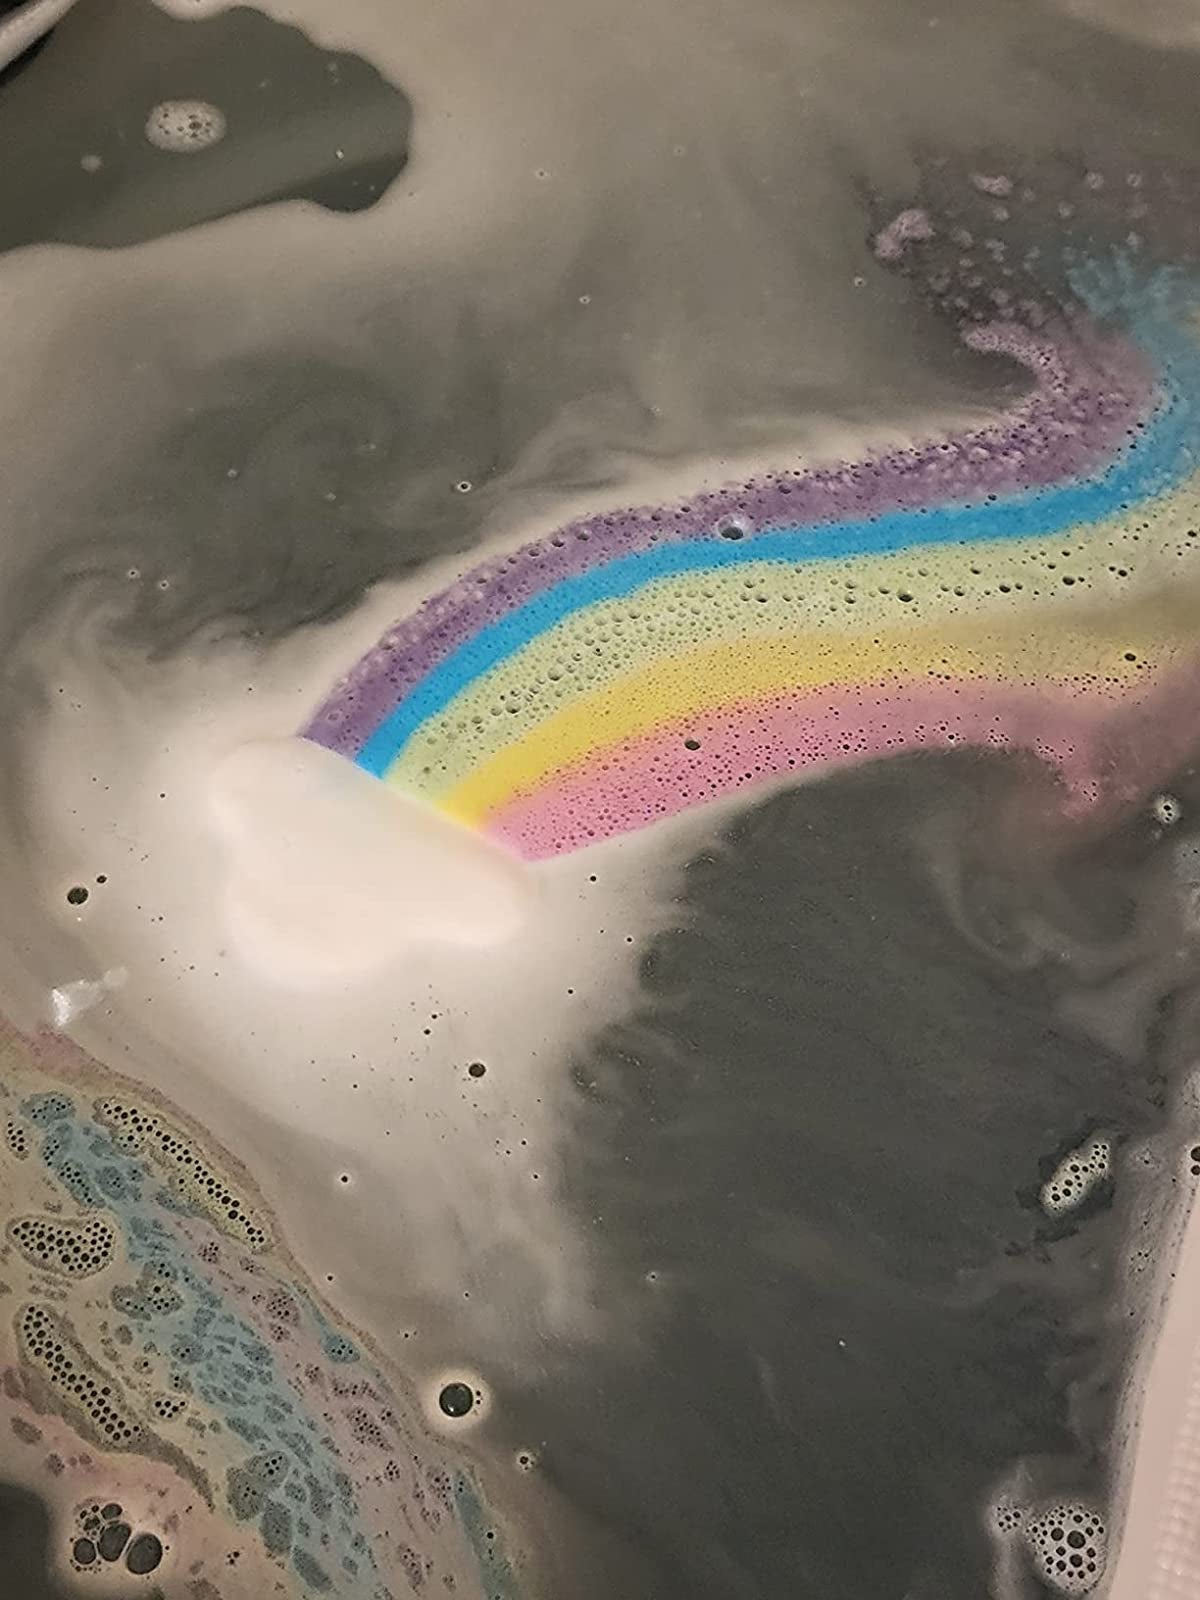 the cloud-shaped bath bomb dissolving in a tub, leaving a rainbow trail